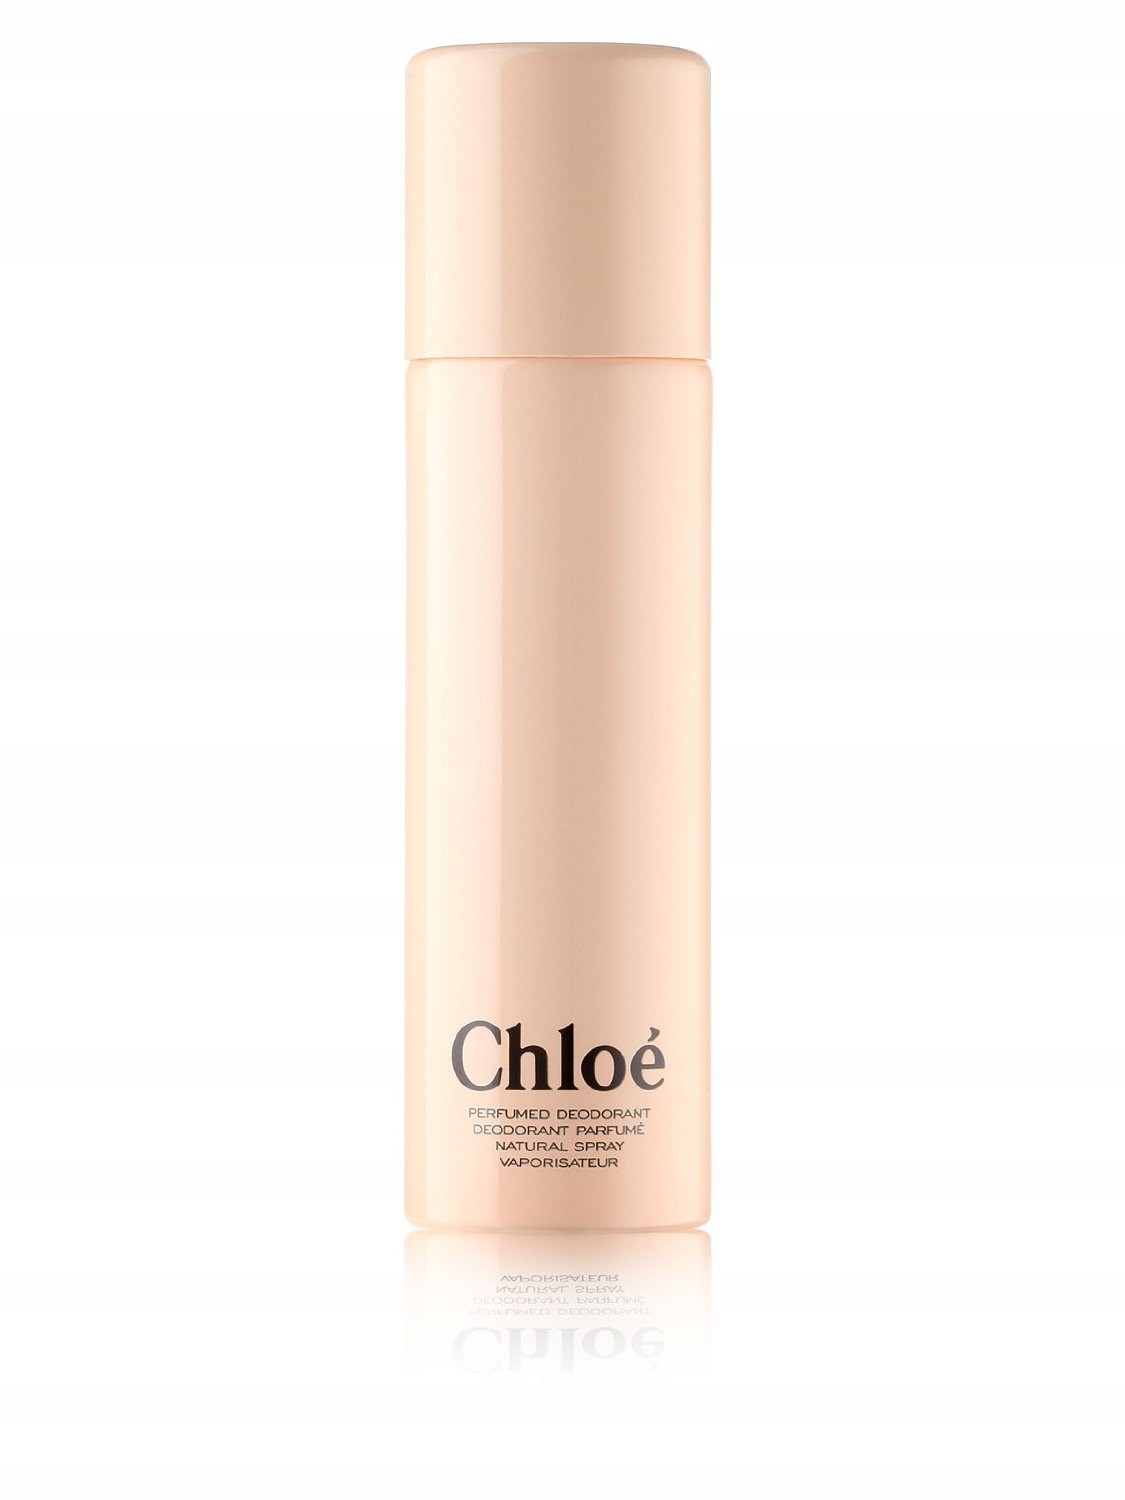 005573 Chloe Signature perfumed deodorant 100ml.